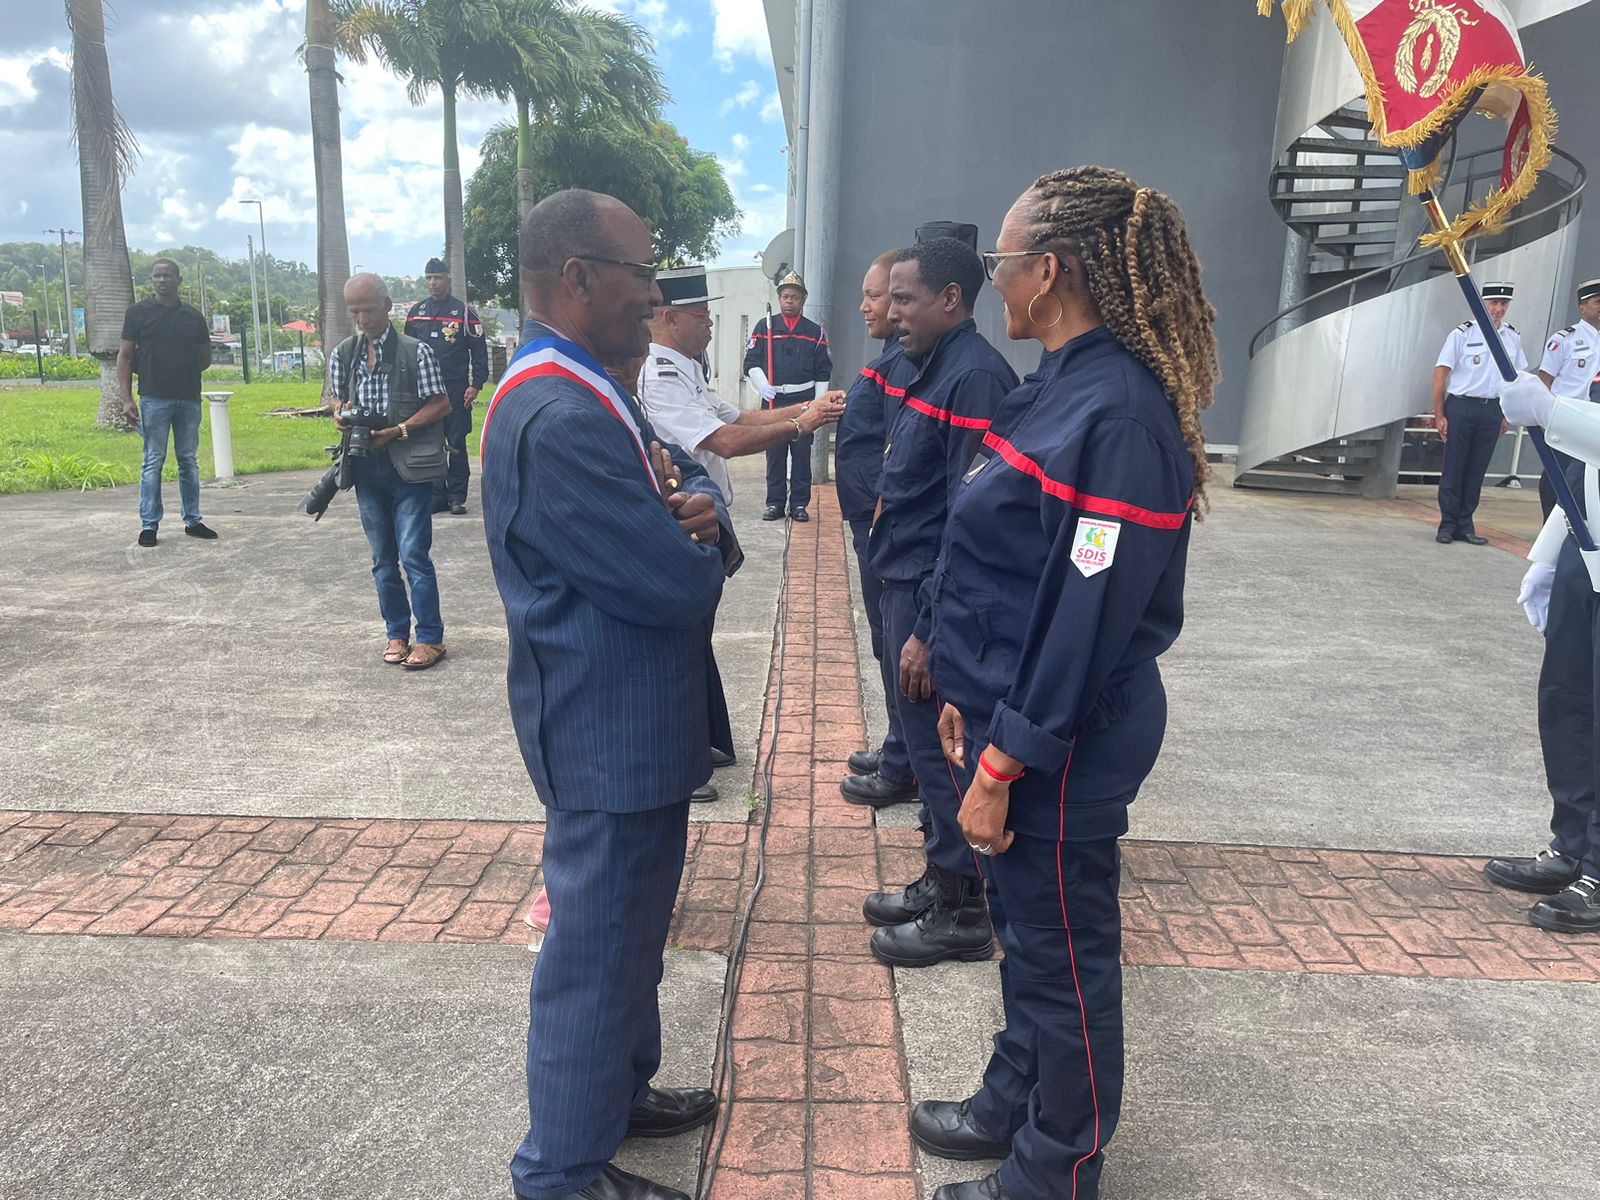     Remises de galons, avancements et véhicules pour les pompiers de Guadeloupe

